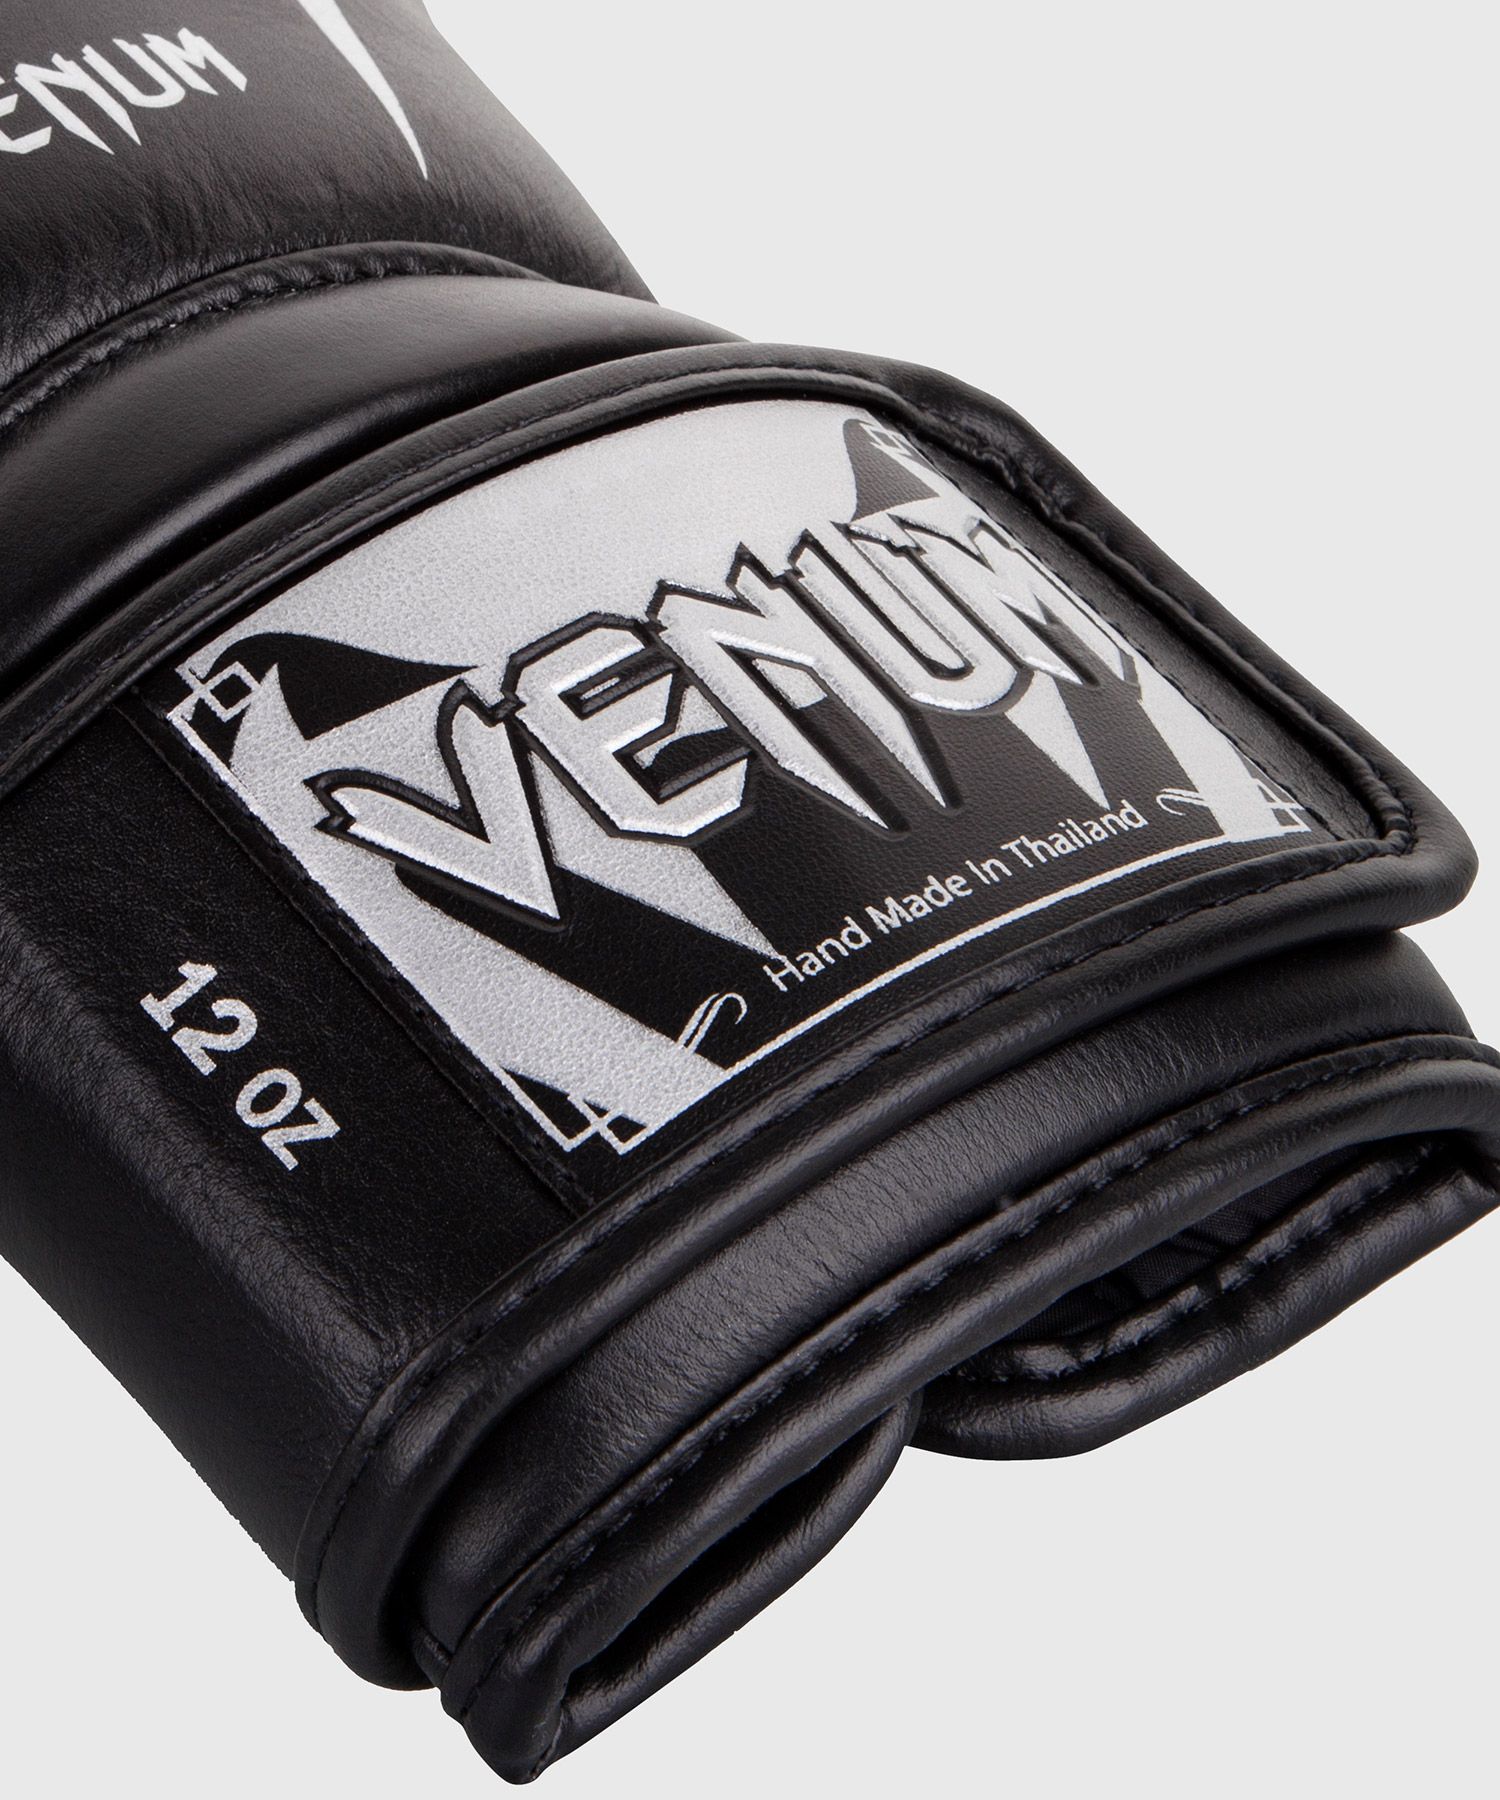 Venum Giant 3.0 ボクシング グローブ - ナッパ レザー - ブラック/シルバー